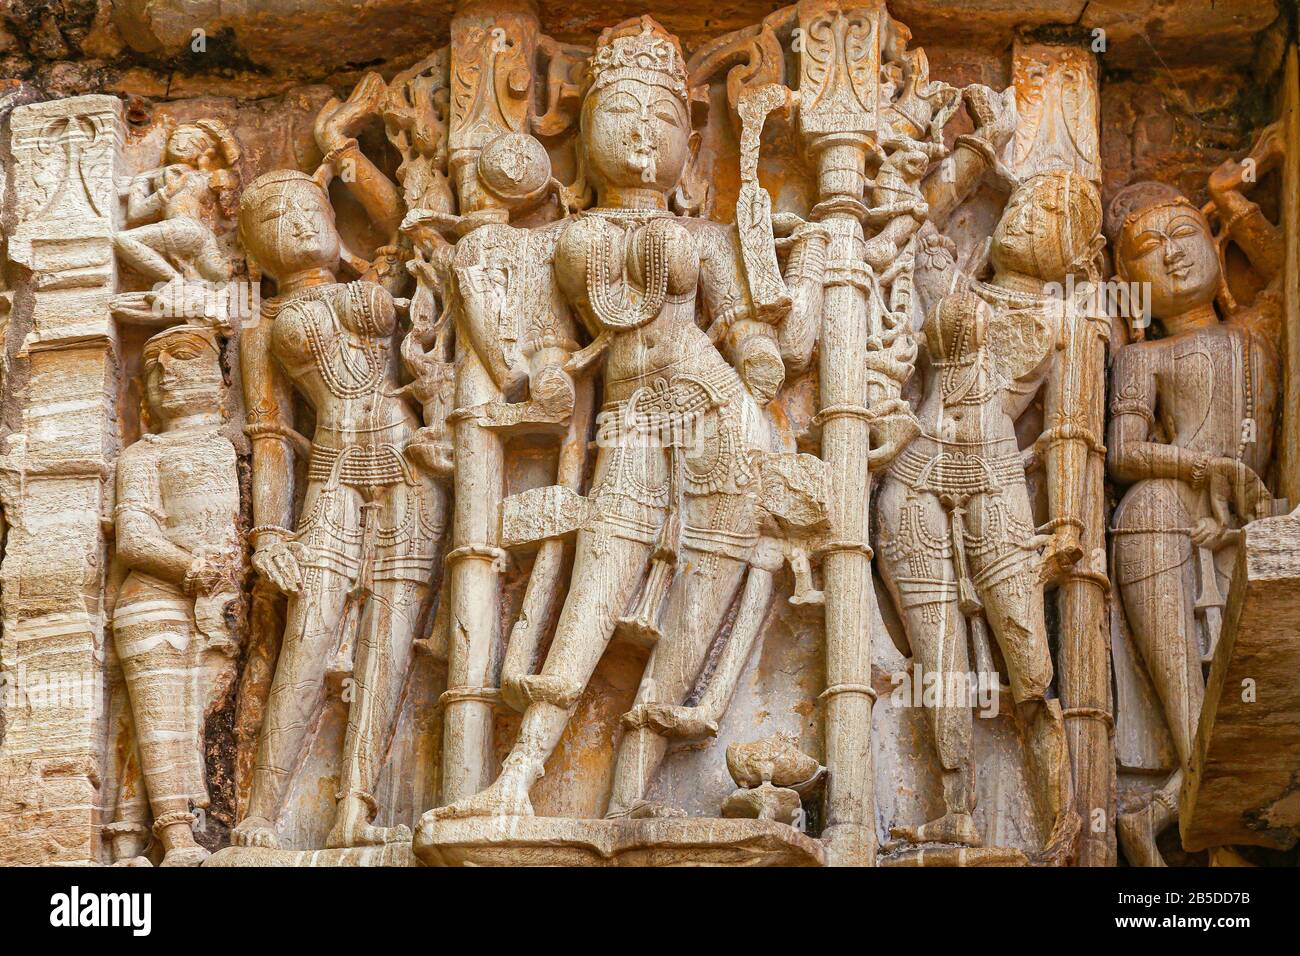 Uraltes Kunstwerk aus Tempelstein im Chittorgarh Fort Rajasthan. Chittor Fort gehört zum UNESCO-Weltkulturerbe und ist eines der größten Forts Indiens Stockfoto